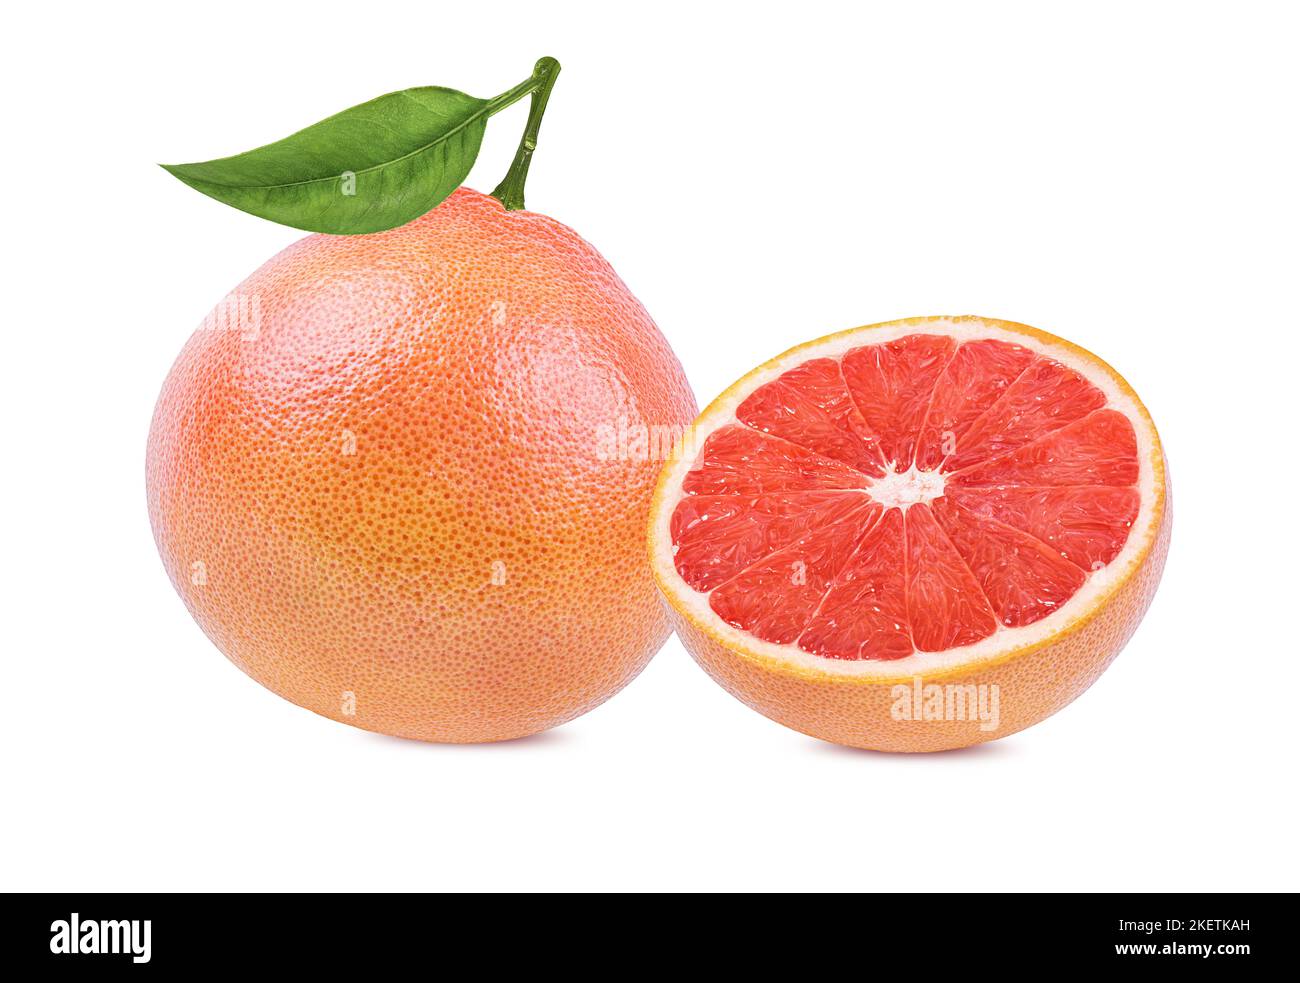 grapefruit isolated on white background Stock Photo